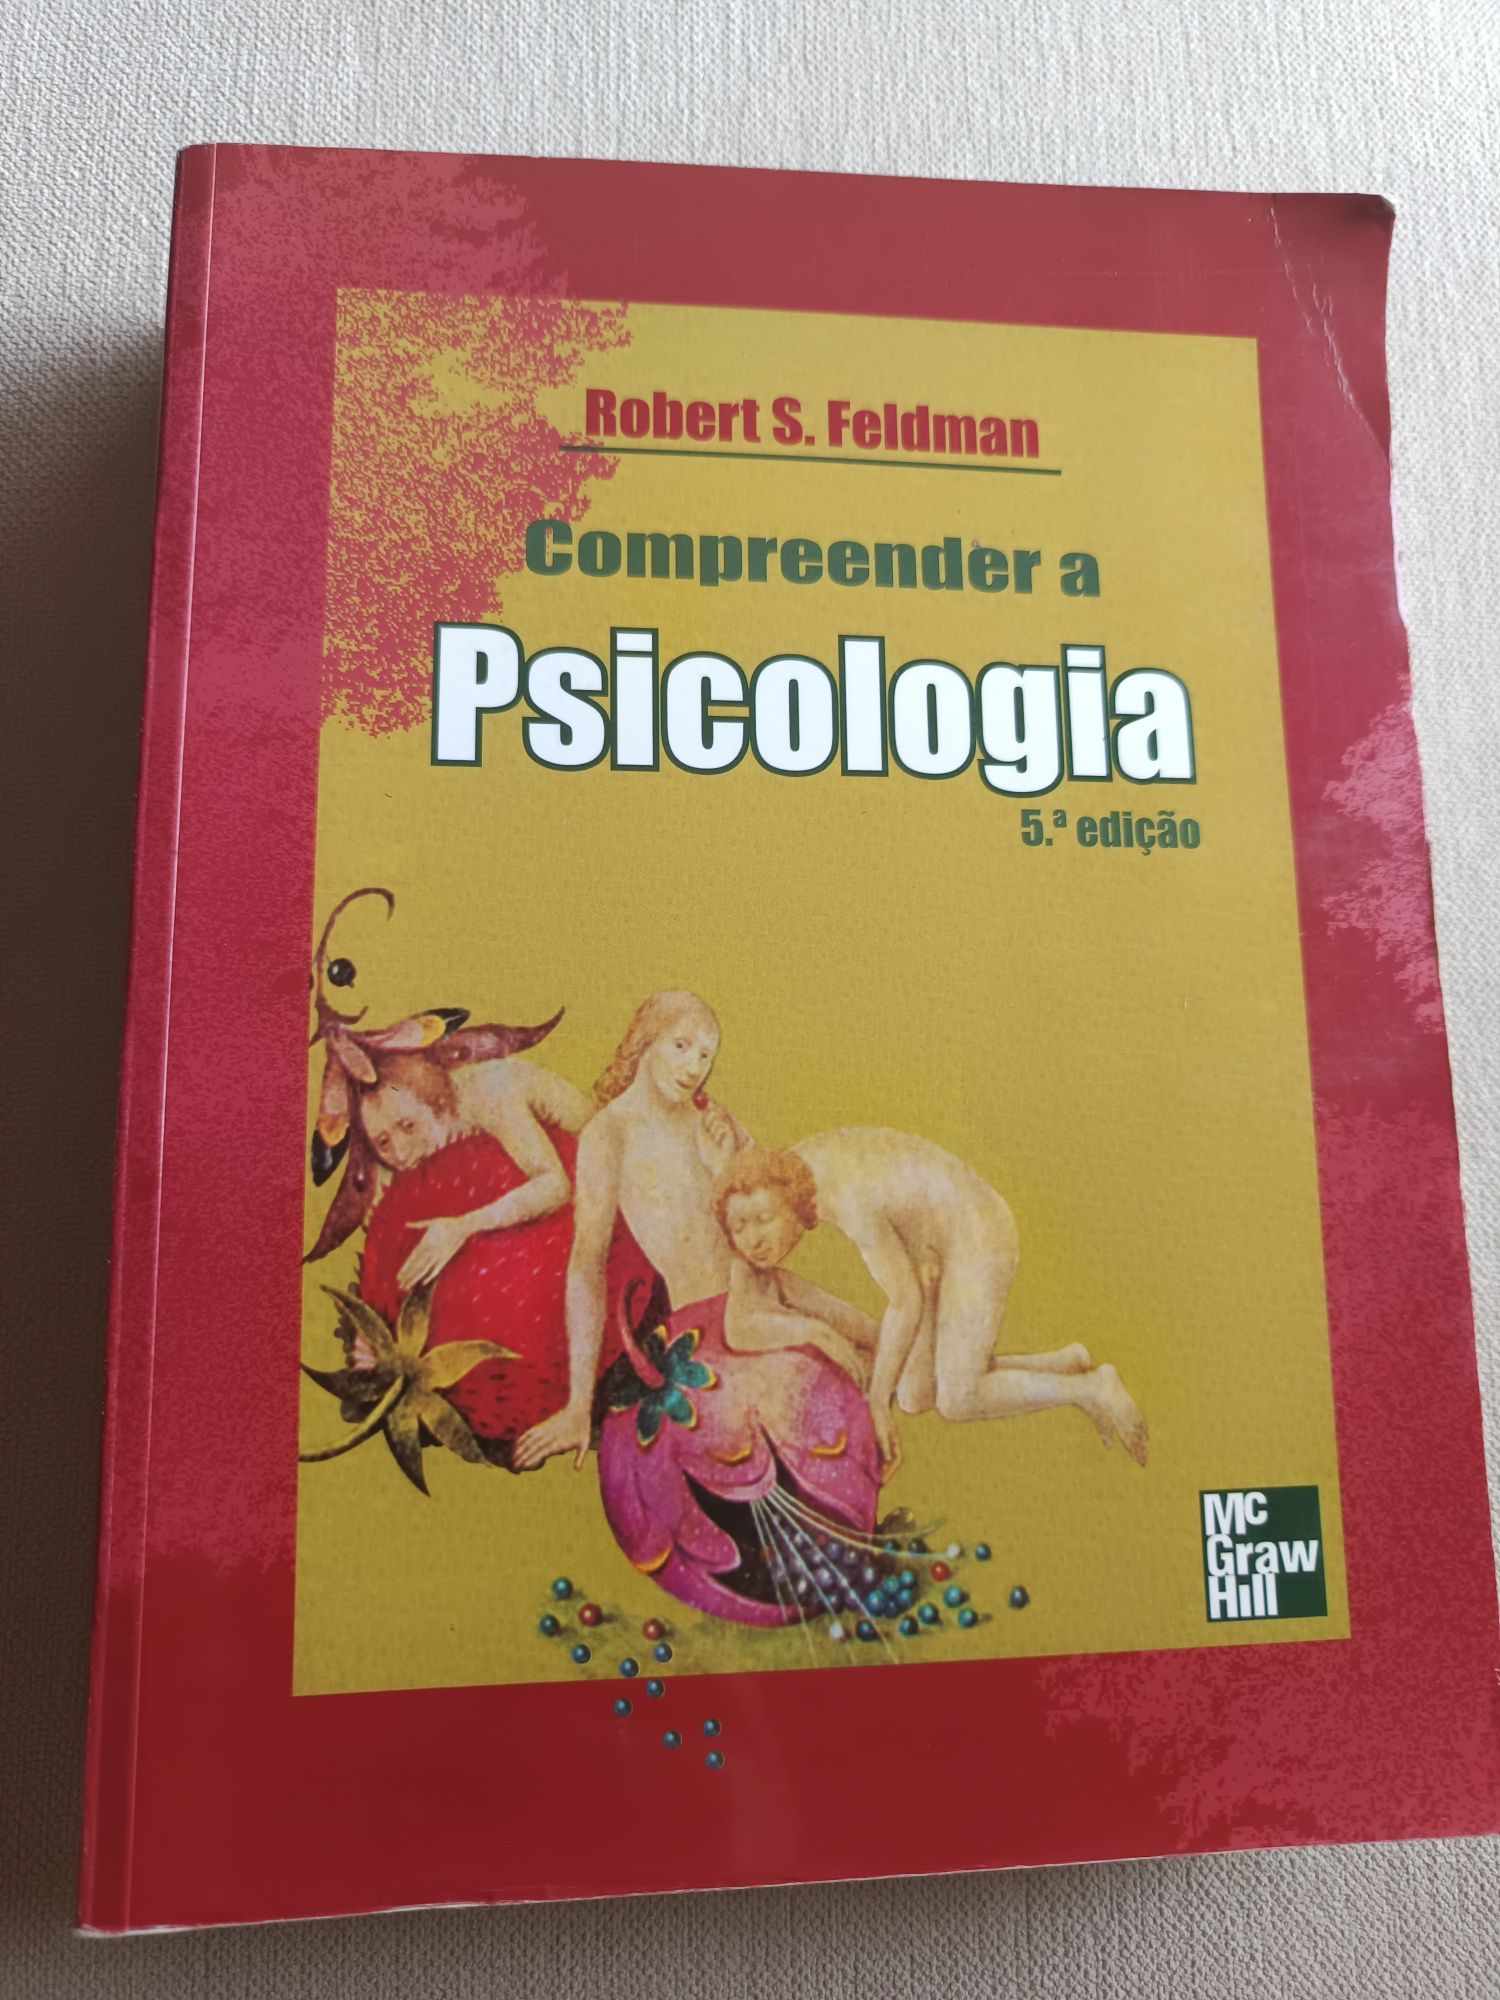 Livro "Compreender a Psicologia"